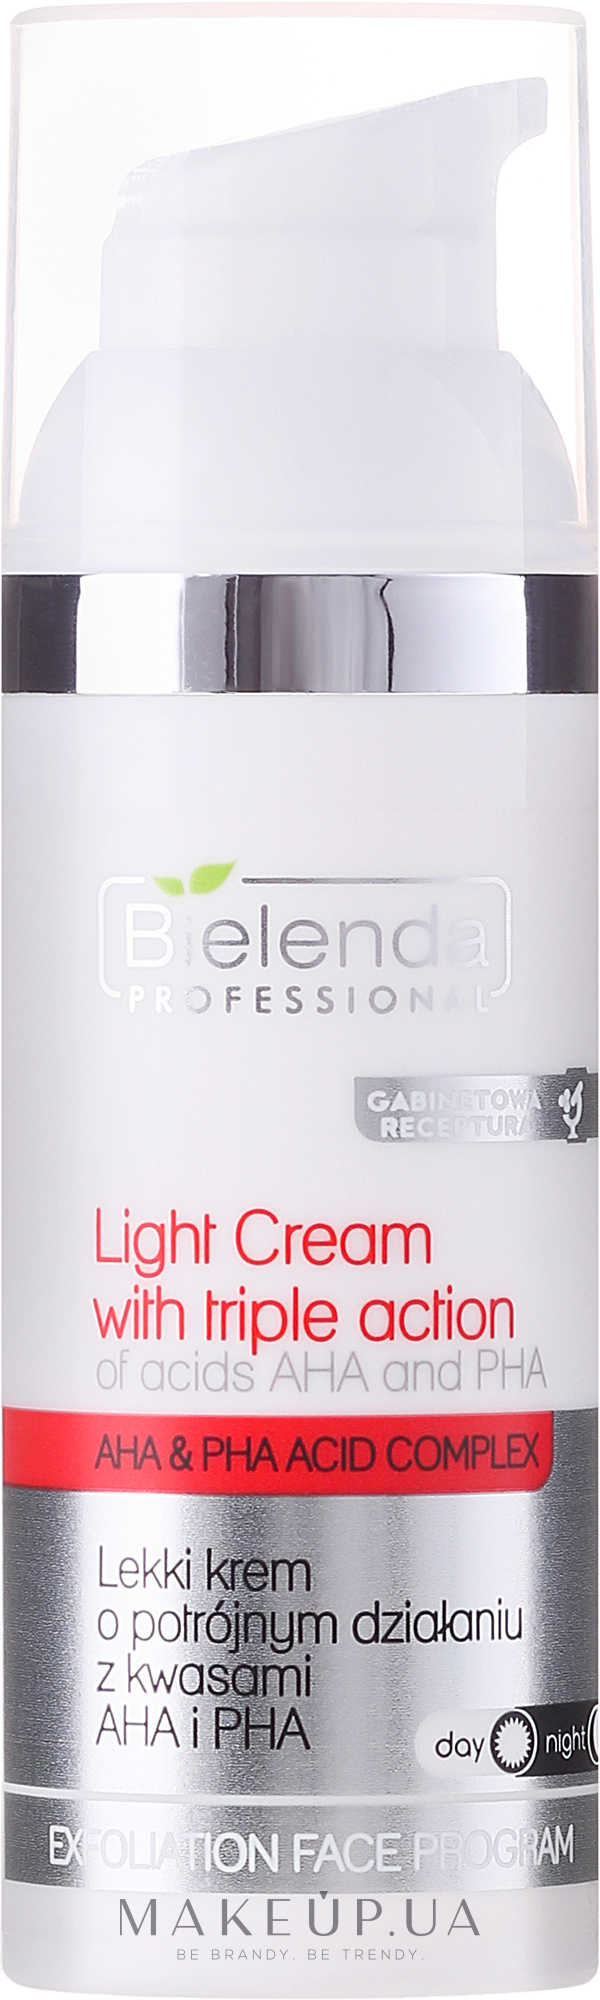 Крем потрійної дії з кислотами AHA і PHA - Bielenda Professional Face Program Light Cream With Triple Action — фото 100ml